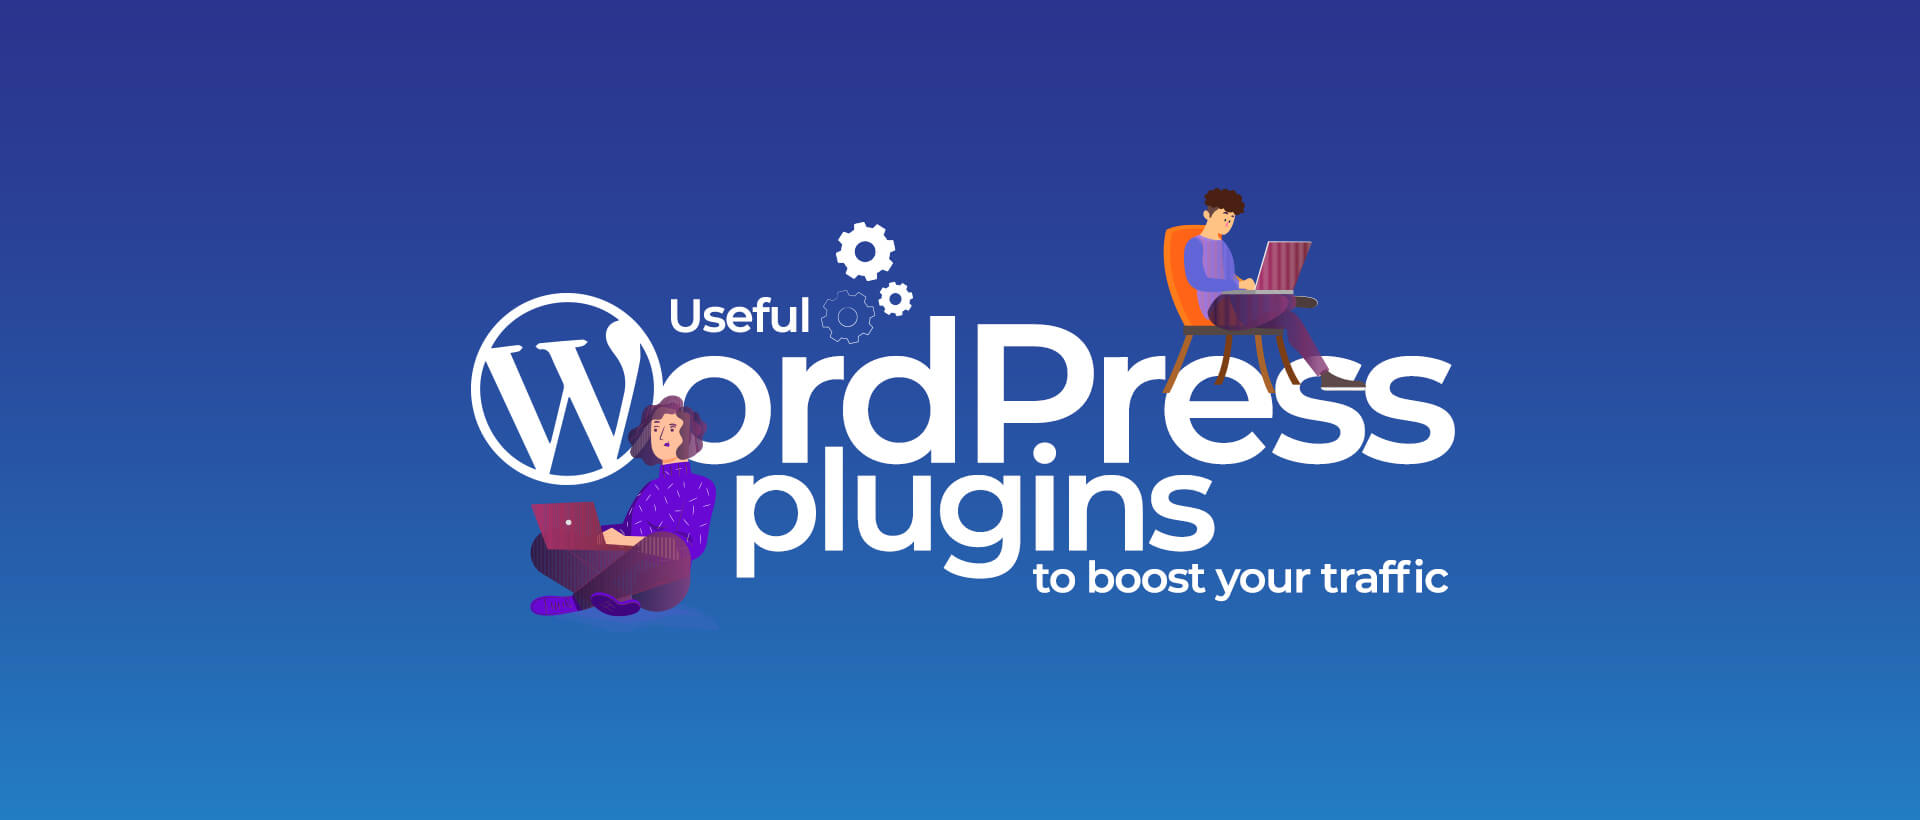 Useful WordPress plugins to boost your traffic